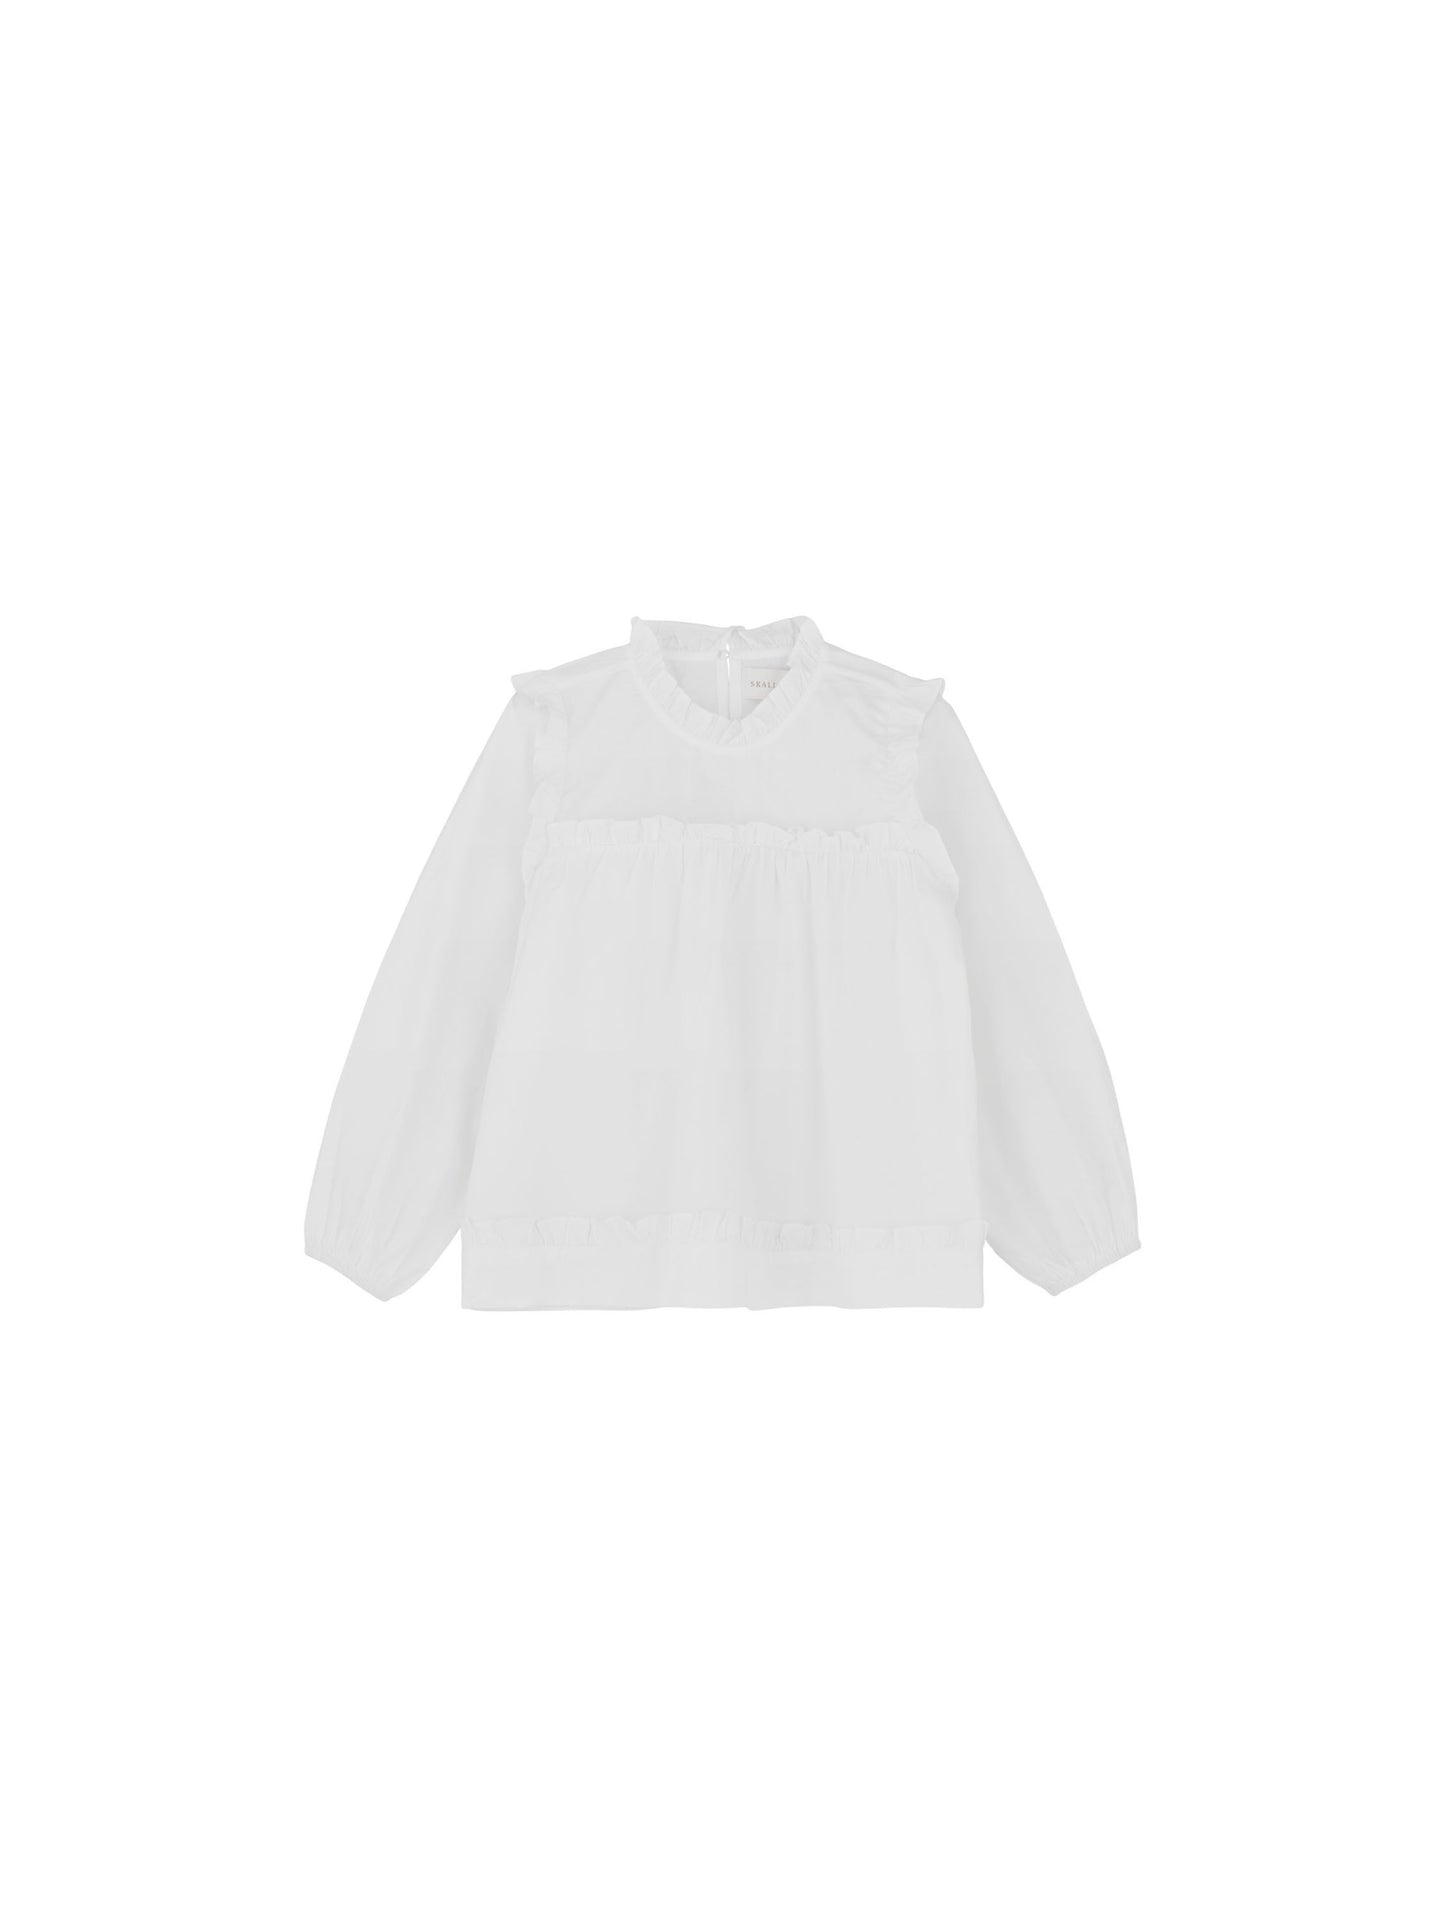 Skall Musling - Marigold blouse - Optic white